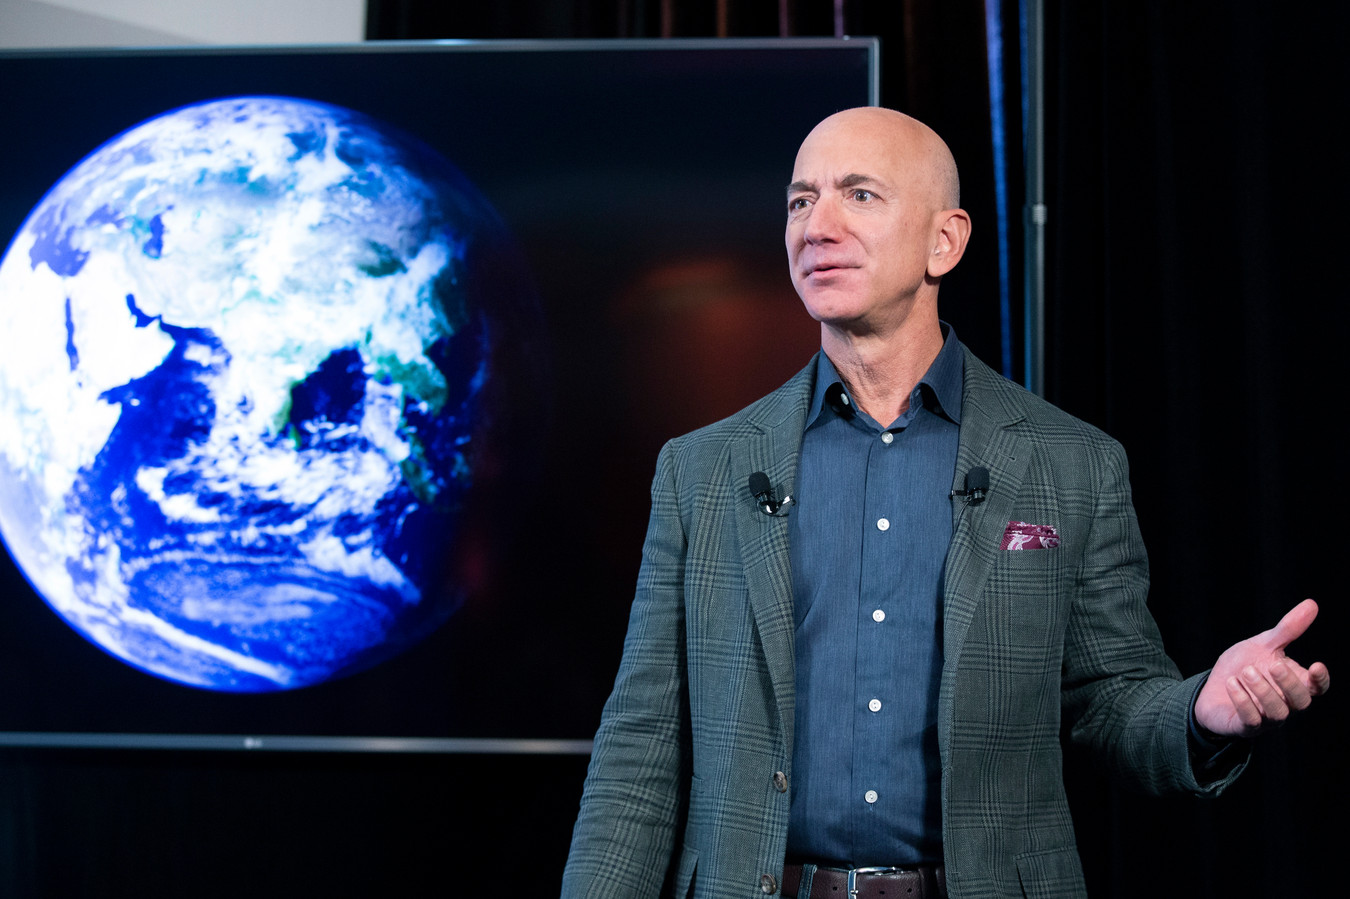 Oprichter Jeff Bezos van internetbedrijf Amazon trekt 10 miljard dollar uit om de effecten van klimaatverandering tegen te gaan.